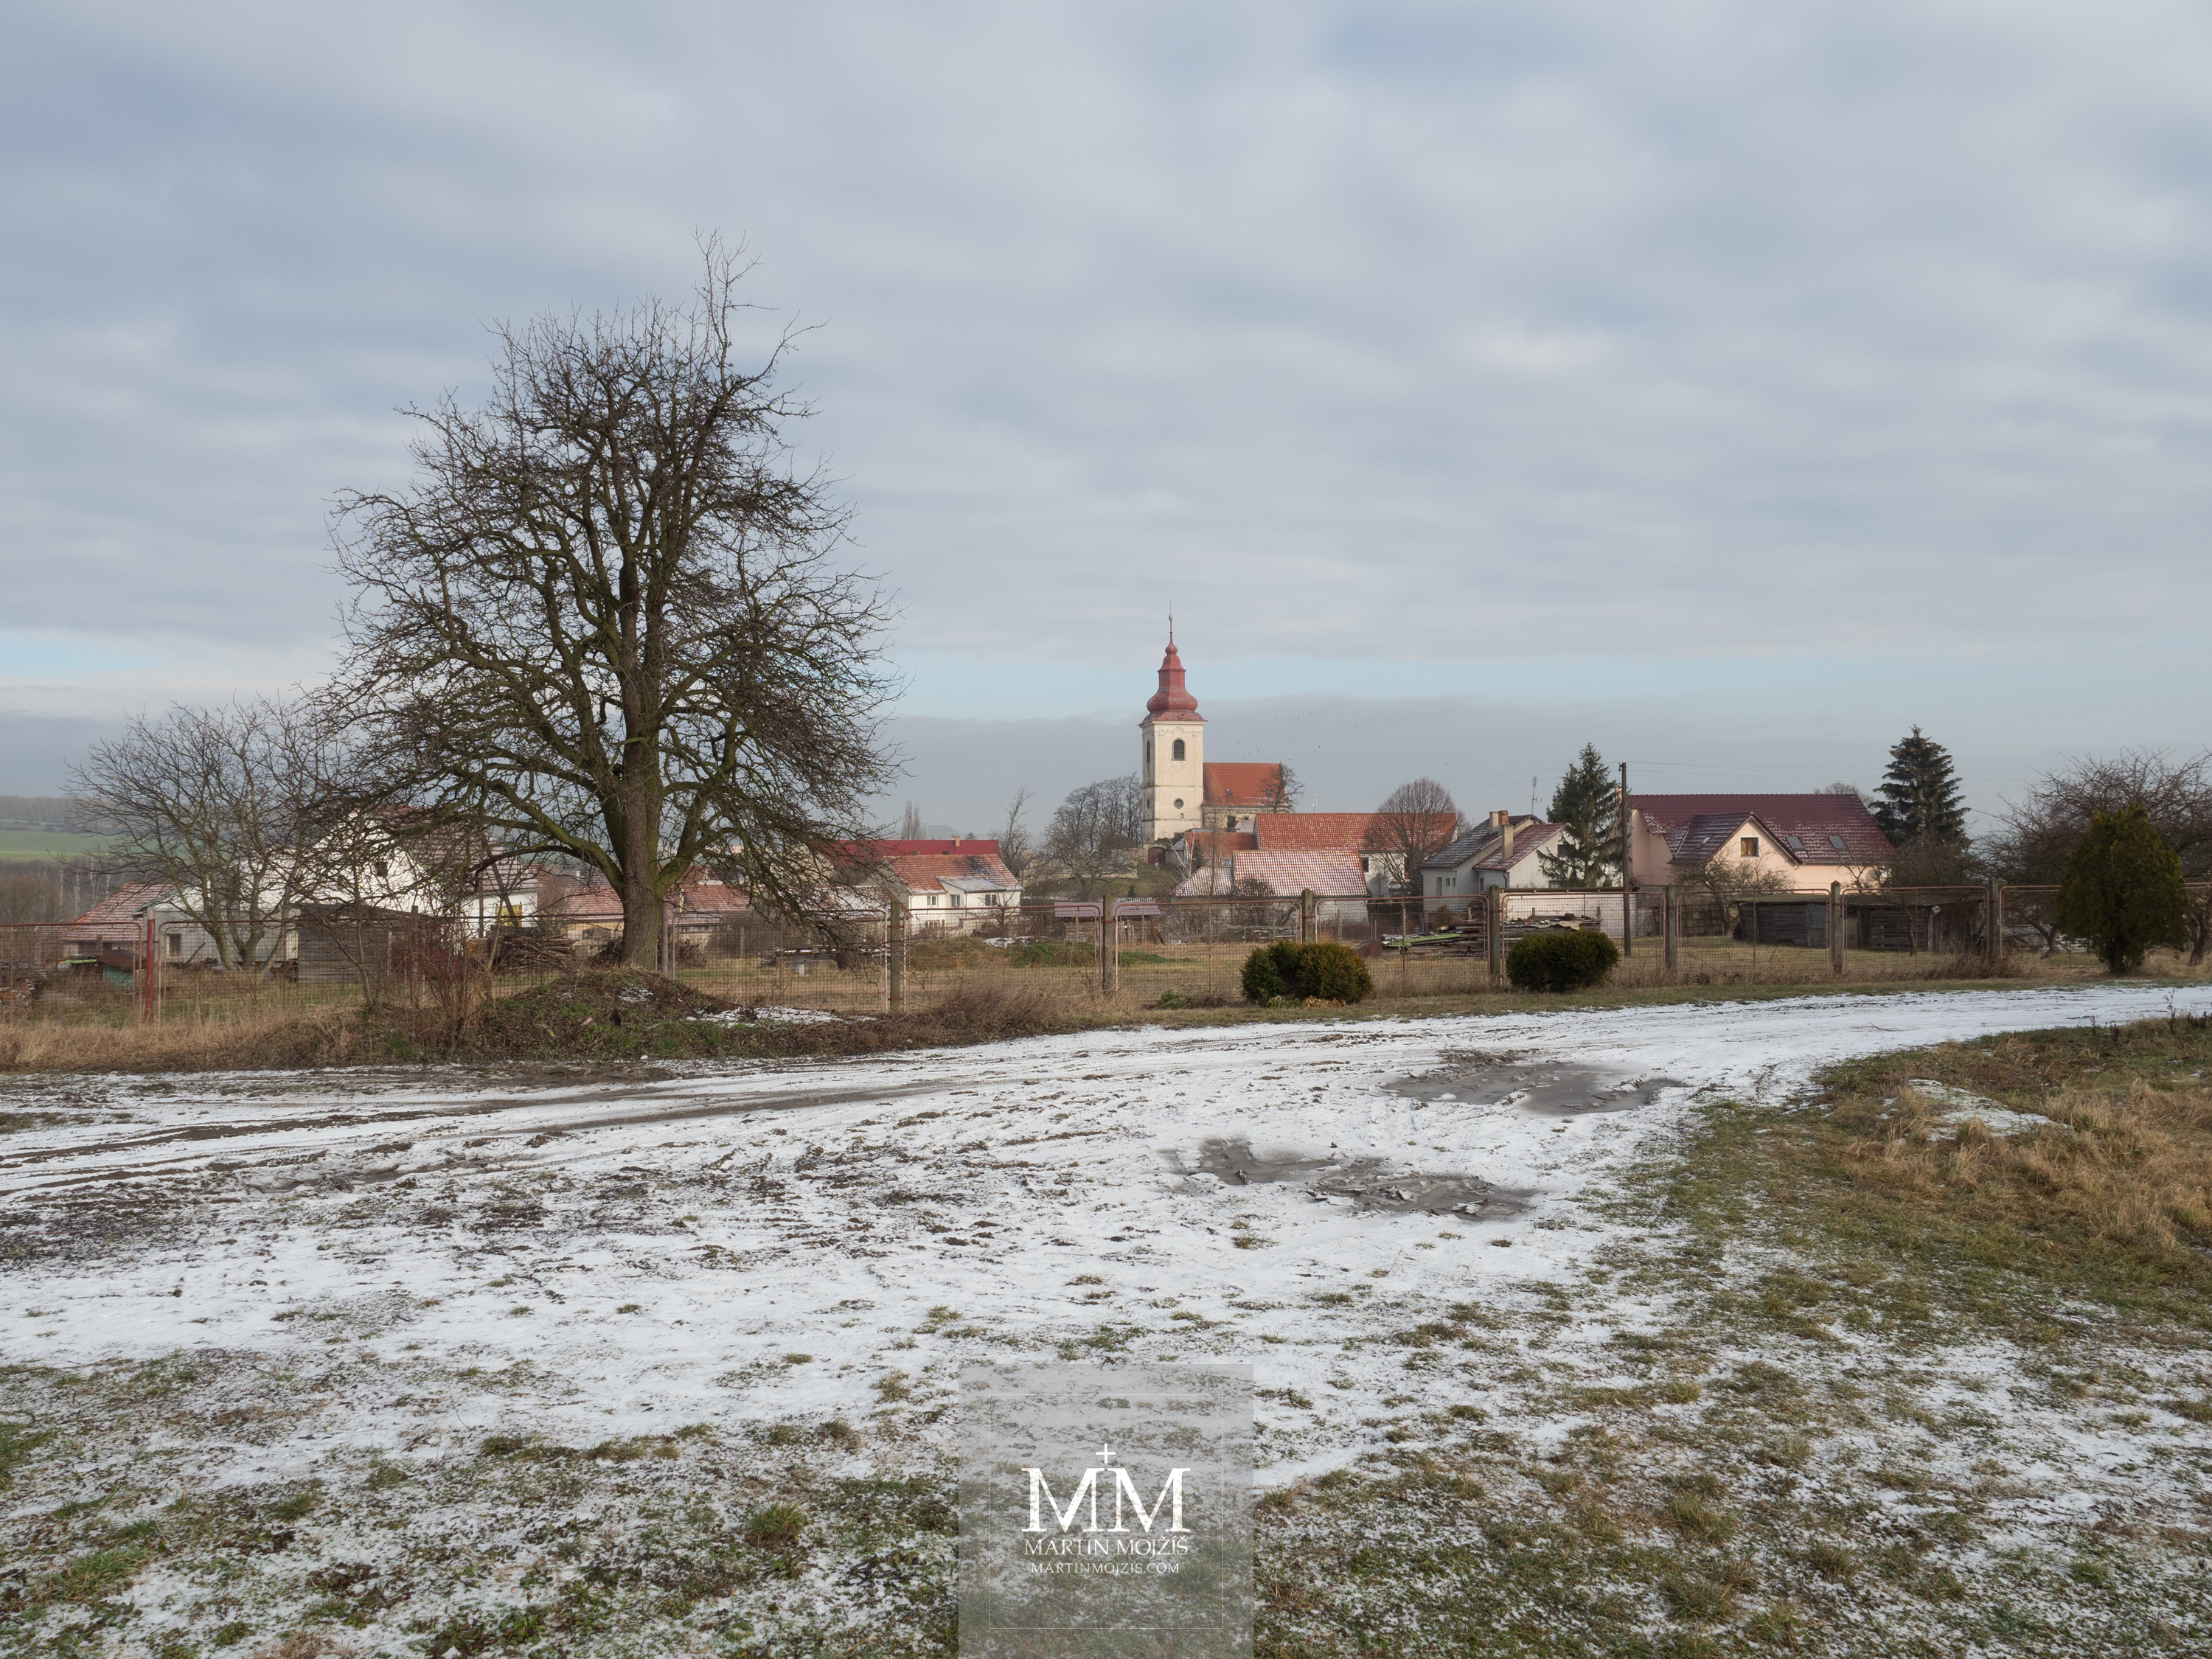 Vesnice v zimě, v pozadí kostel. Fotografie vytvořena objektivem Olympus 12 - 40 mm 2.8 Pro.